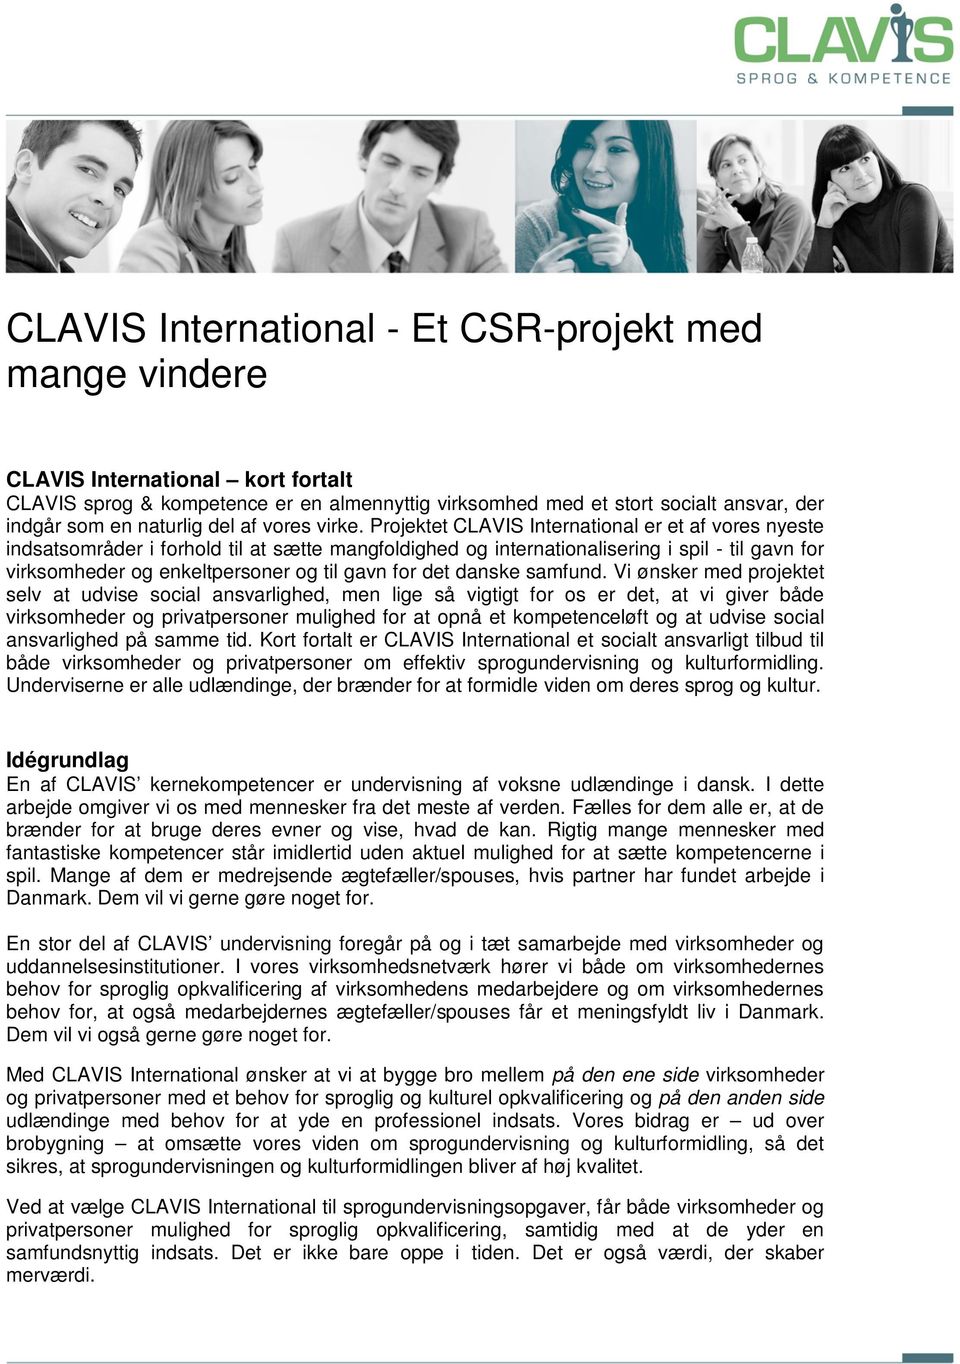 Projektet CLAVIS International er et af vores nyeste indsatsområder i forhold til at sætte mangfoldighed og internationalisering i spil - til gavn for virksomheder og enkeltpersoner og til gavn for